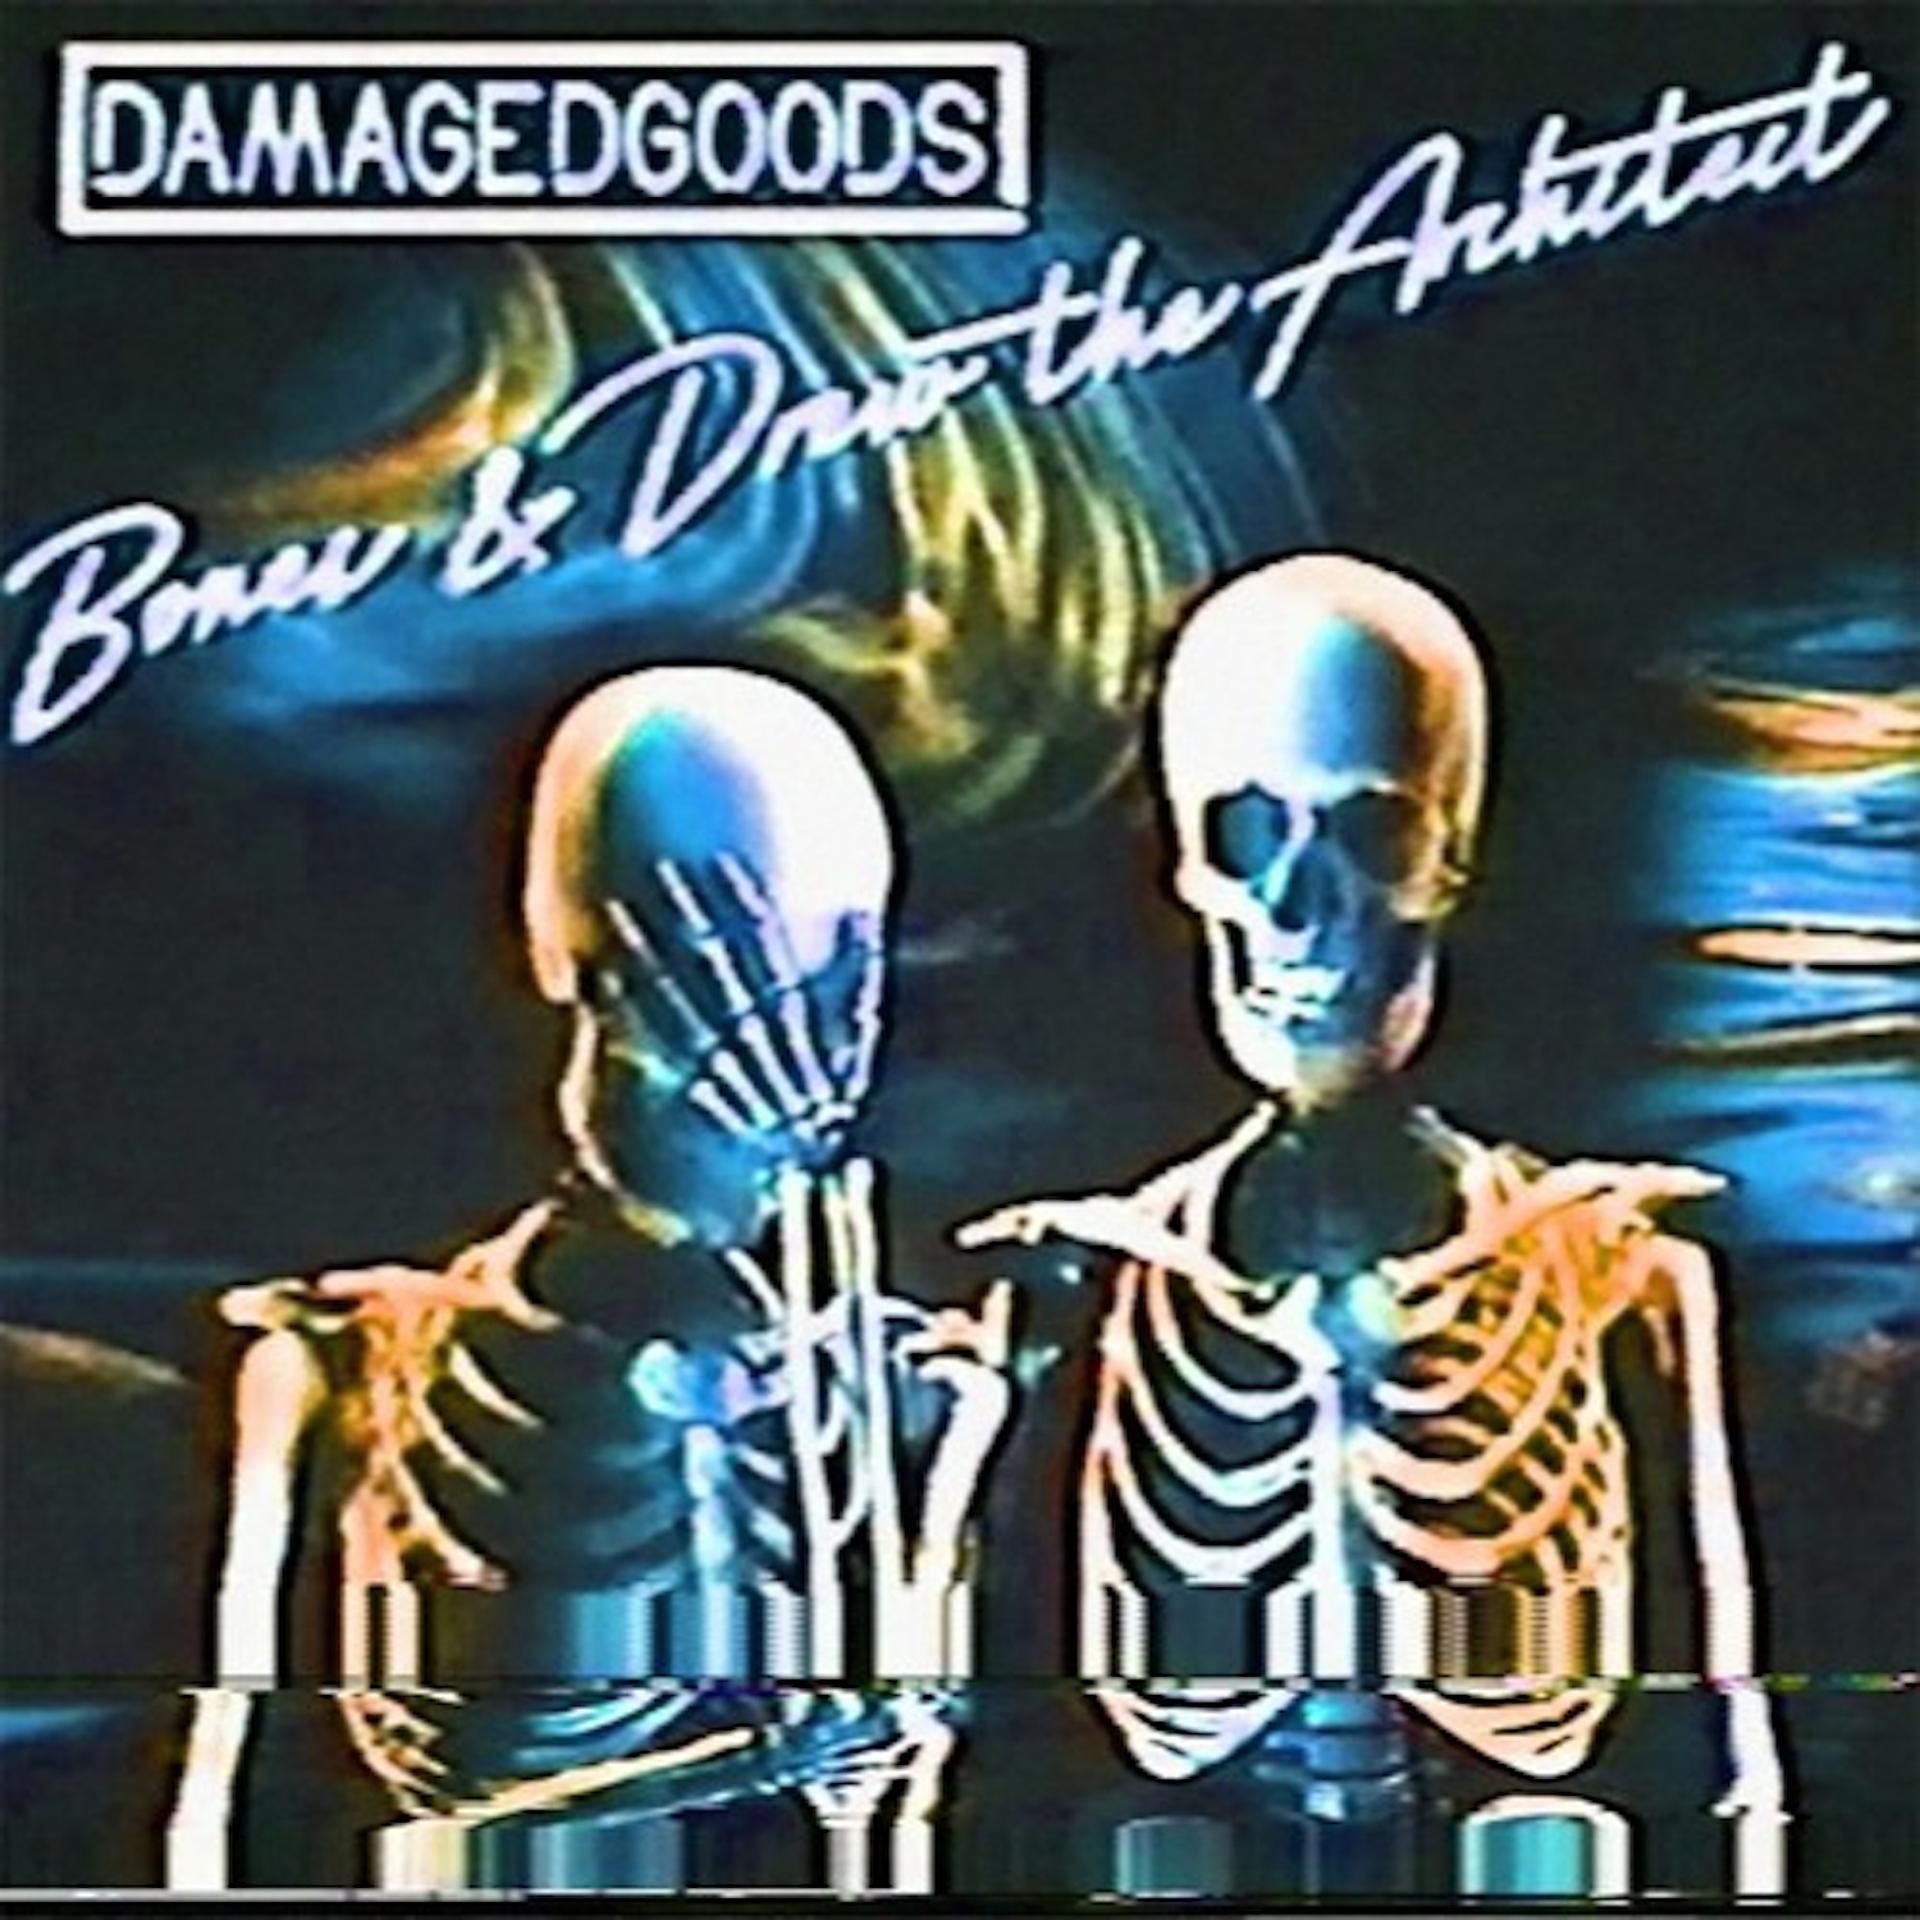 Bones ctrl. Bones (рэпер). Damaged goods Bones. Bones обложки альбомов. Bones Drew the Architect Damaged goods.